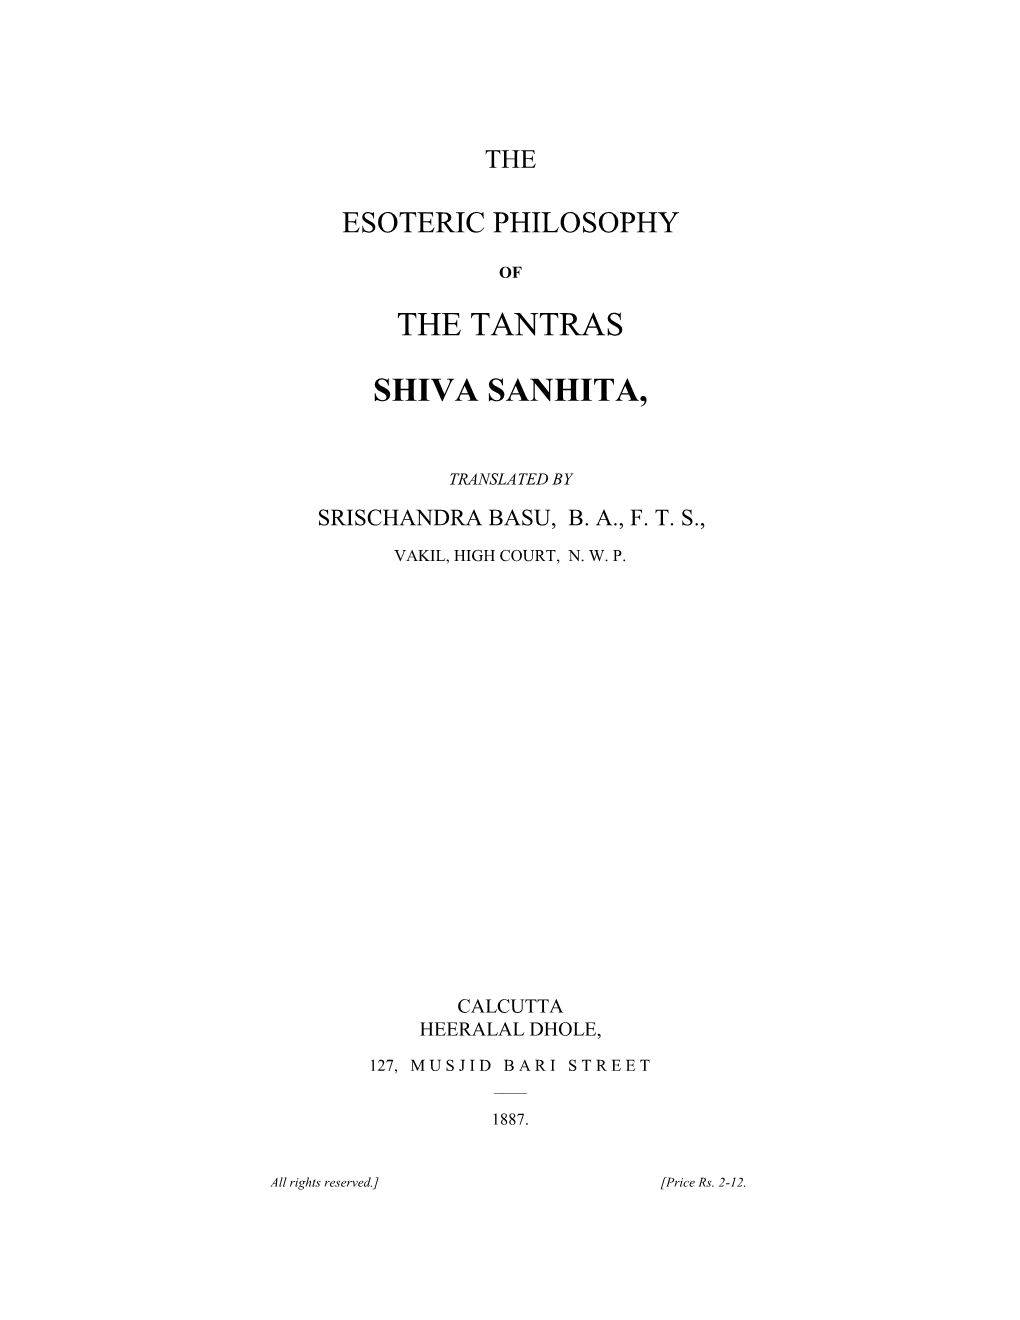 The Tantras Shiva Sanhita